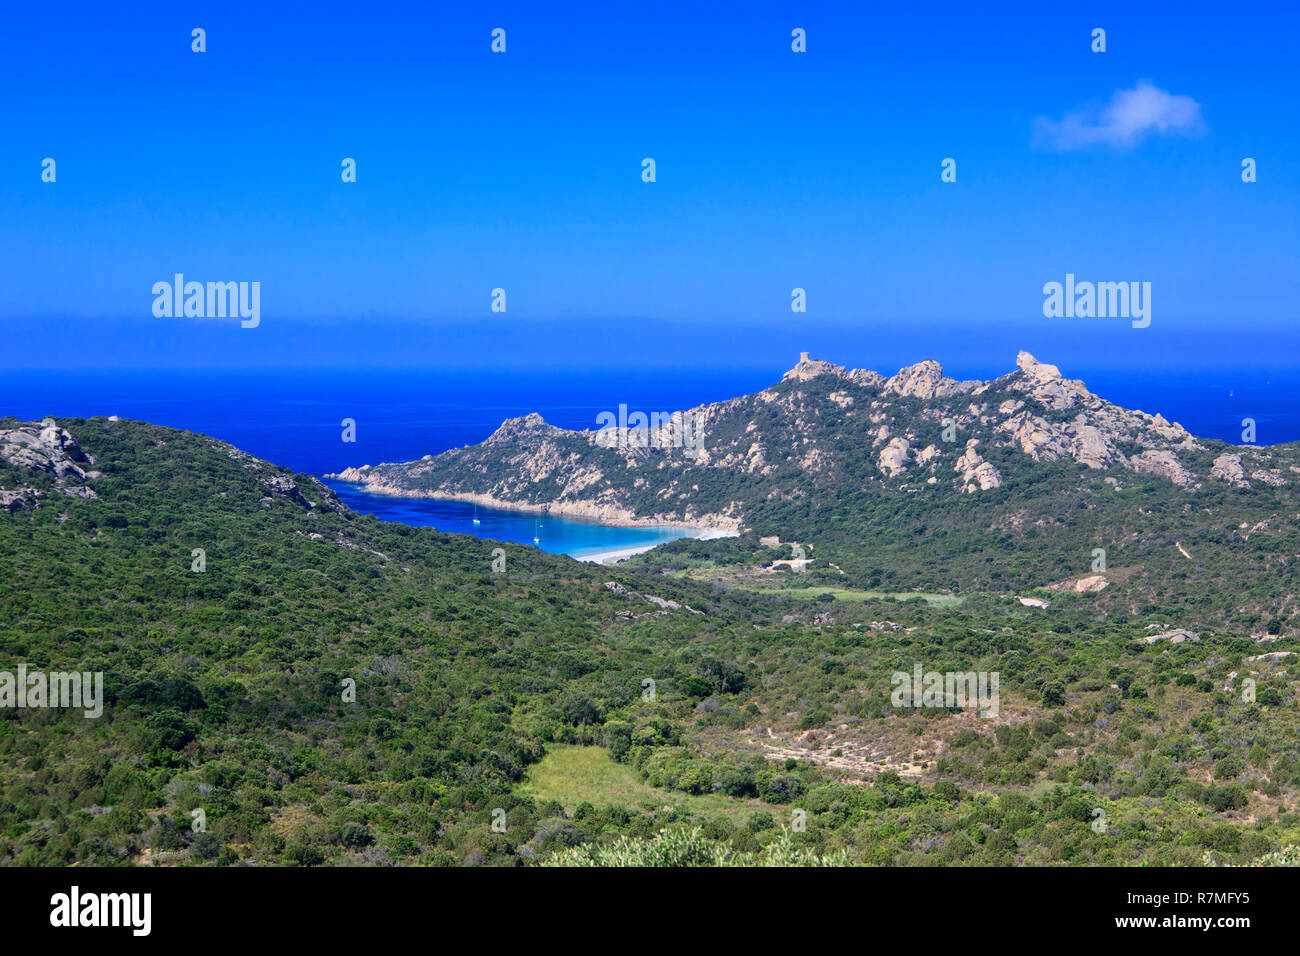 Bucht von Roccapina auf der Insel Korsika, Frankreich. Auf dem Berg ein genuesischer Turm und rechts einen Stein wie ein Löwe. Segelboote Verankerung Stockfoto